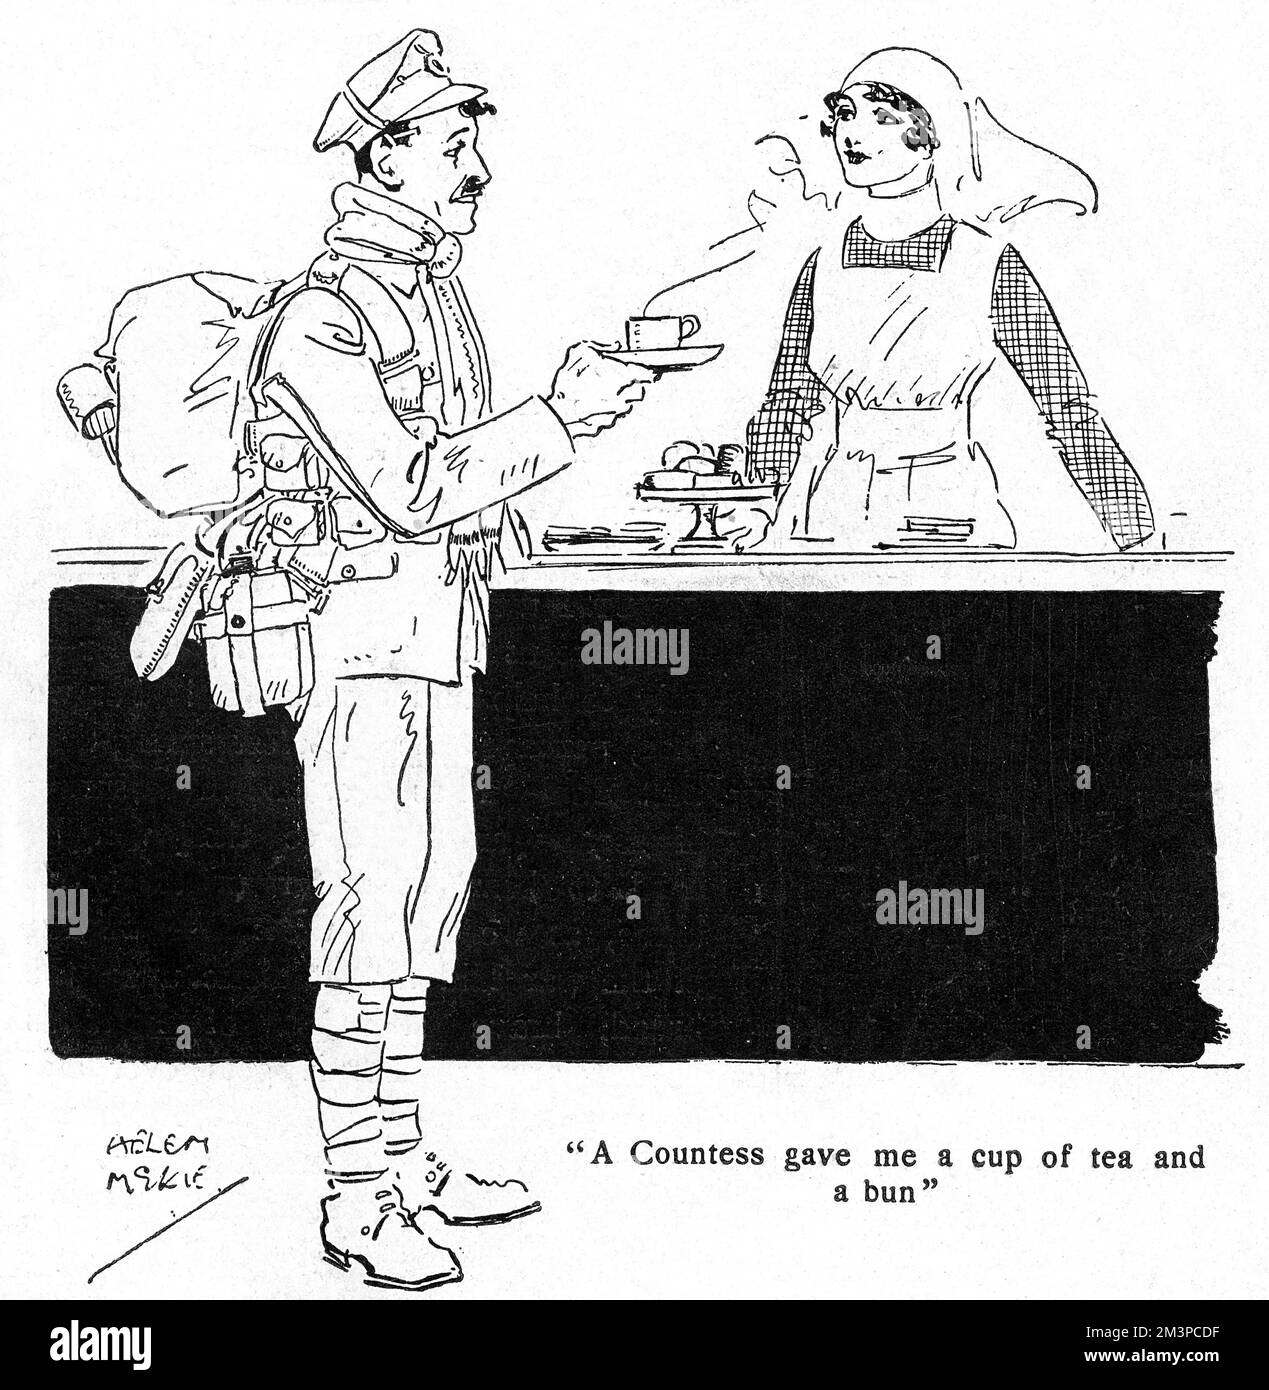 Un soldat de la première Guerre mondiale a reçu une tasse de thé d'une femme aristocratique en uniforme d'infirmière. 'Canteening' était l'une des professions bénévoles préférées des femmes bien-nées pendant la Grande Guerre. Il y avait des cantines dans les gares, dans les usines de munitions et dans les huttes du YMCA près de la ligne de front, toutes avec des femmes qui faisaient la restauration à des centaines, voire des milliers de soldats affamés chaque jour. Date: 1918 Banque D'Images